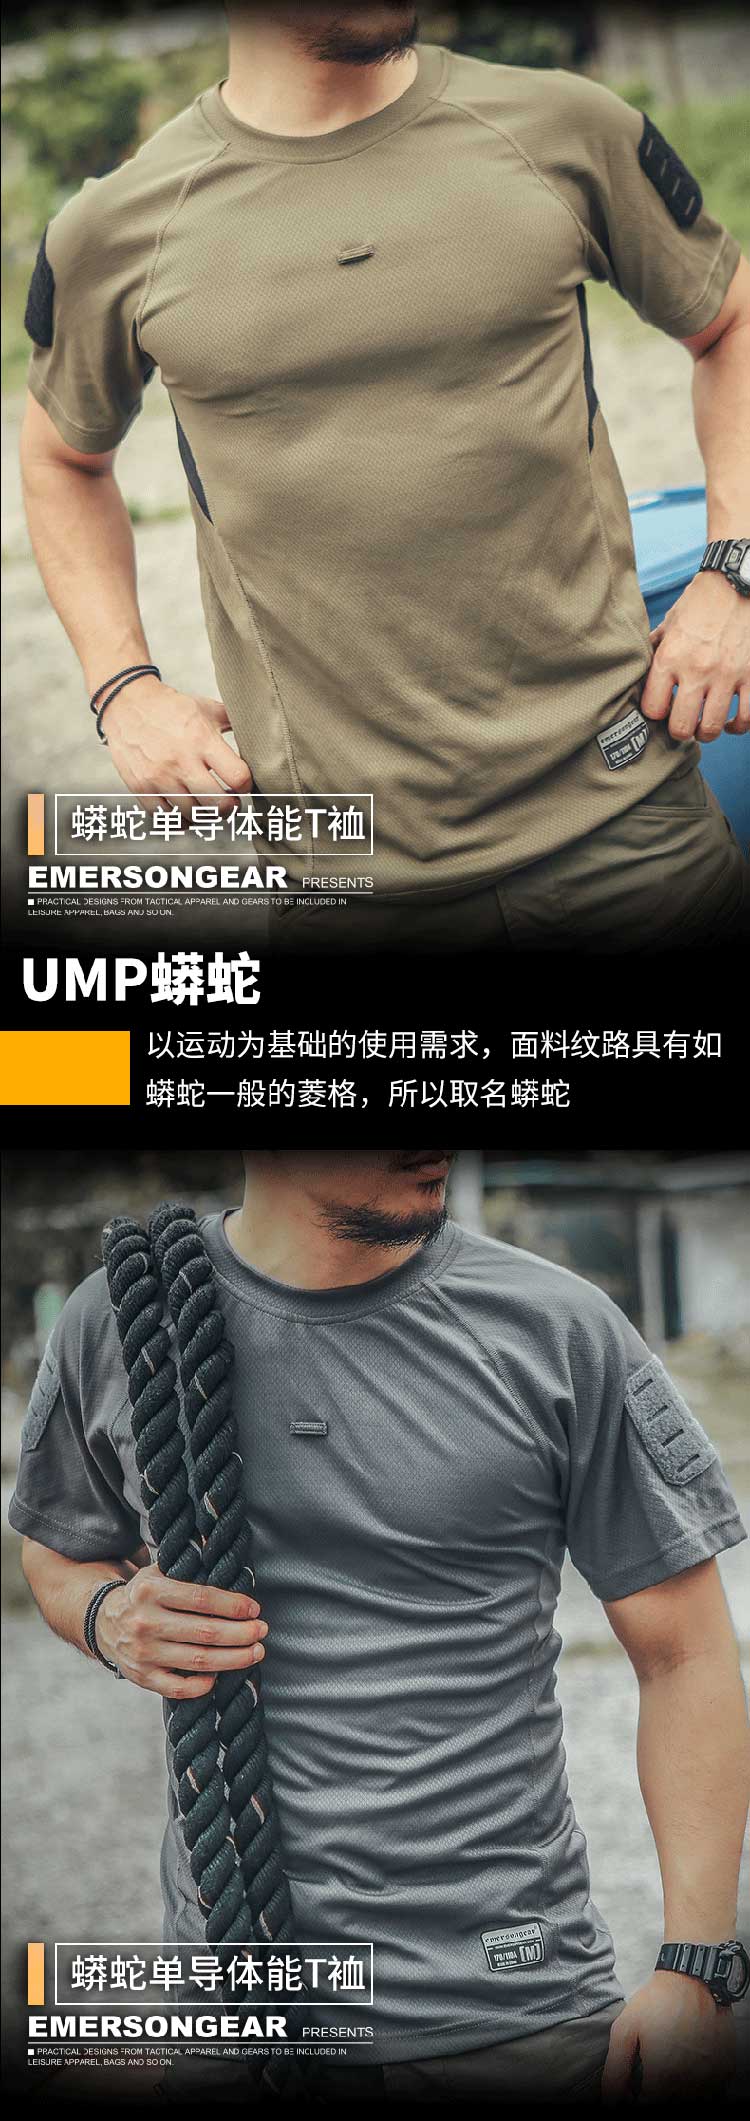 爱默生Emersongear蓝标“UMP蟒蛇”单导体能T恤夏季男士短袖9551-11